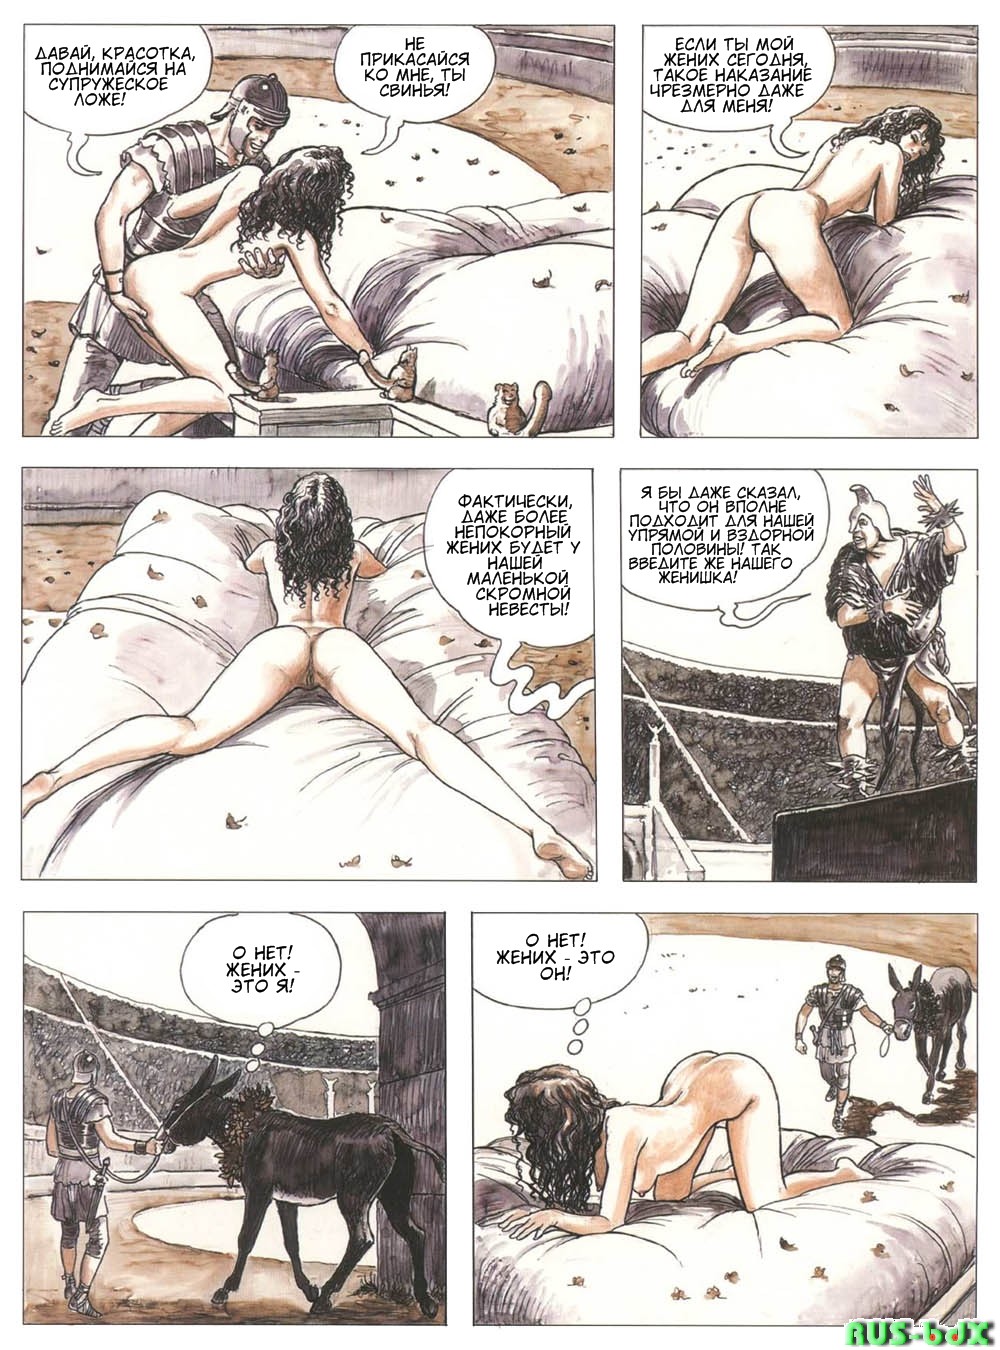 Превращение Луция в осла »Золотой осел« - порно комикс № 52